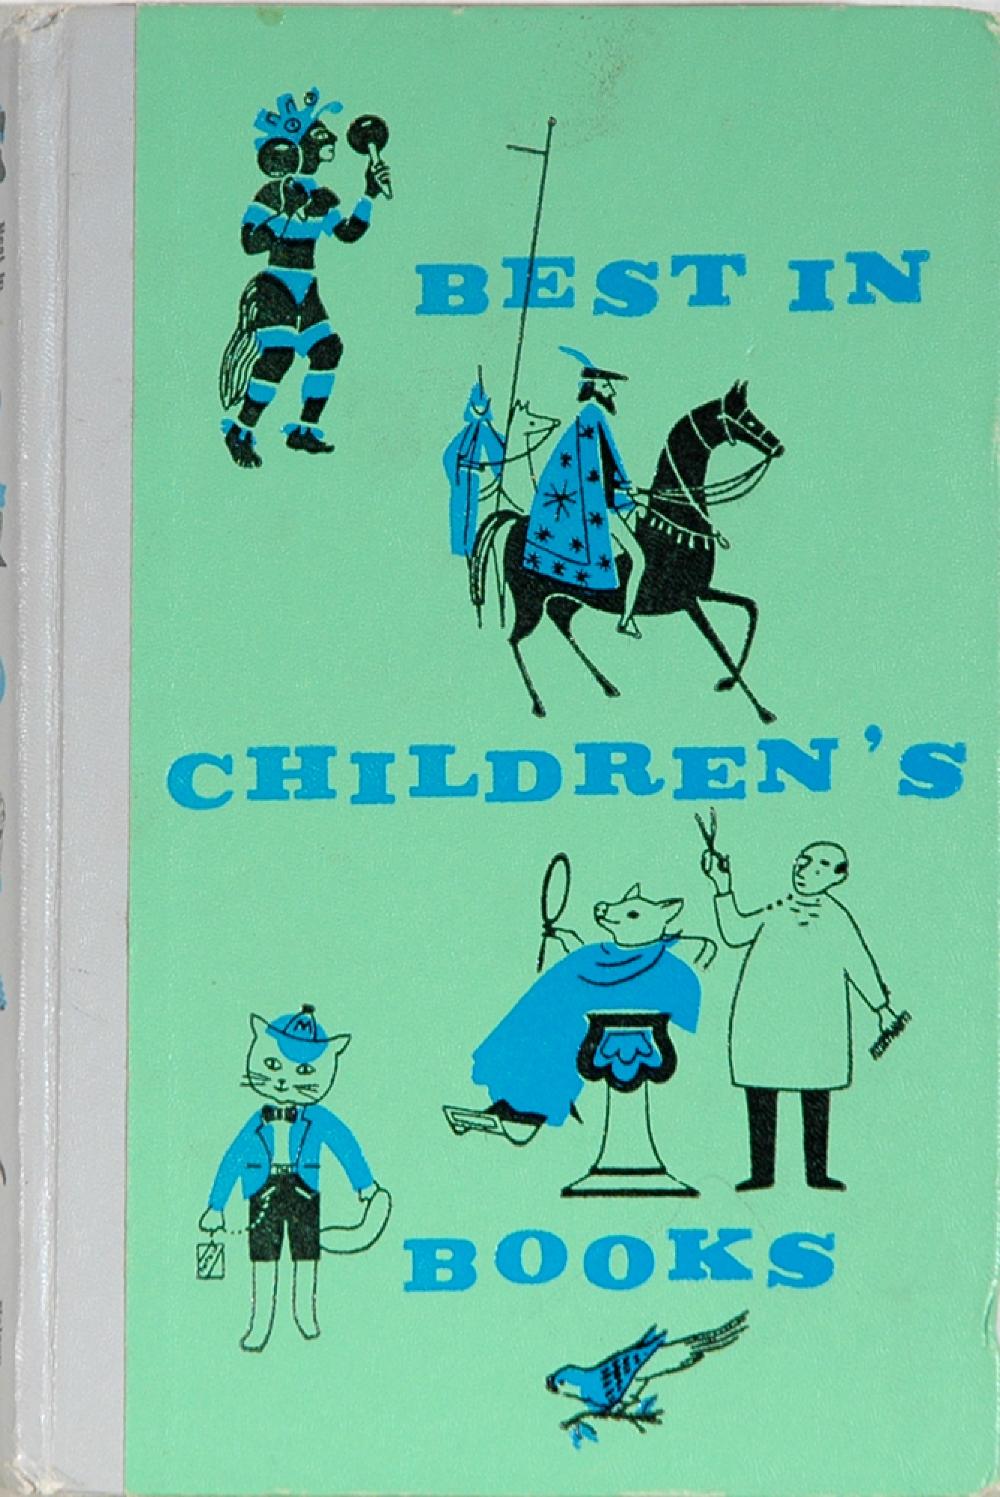 Best in Children's Books